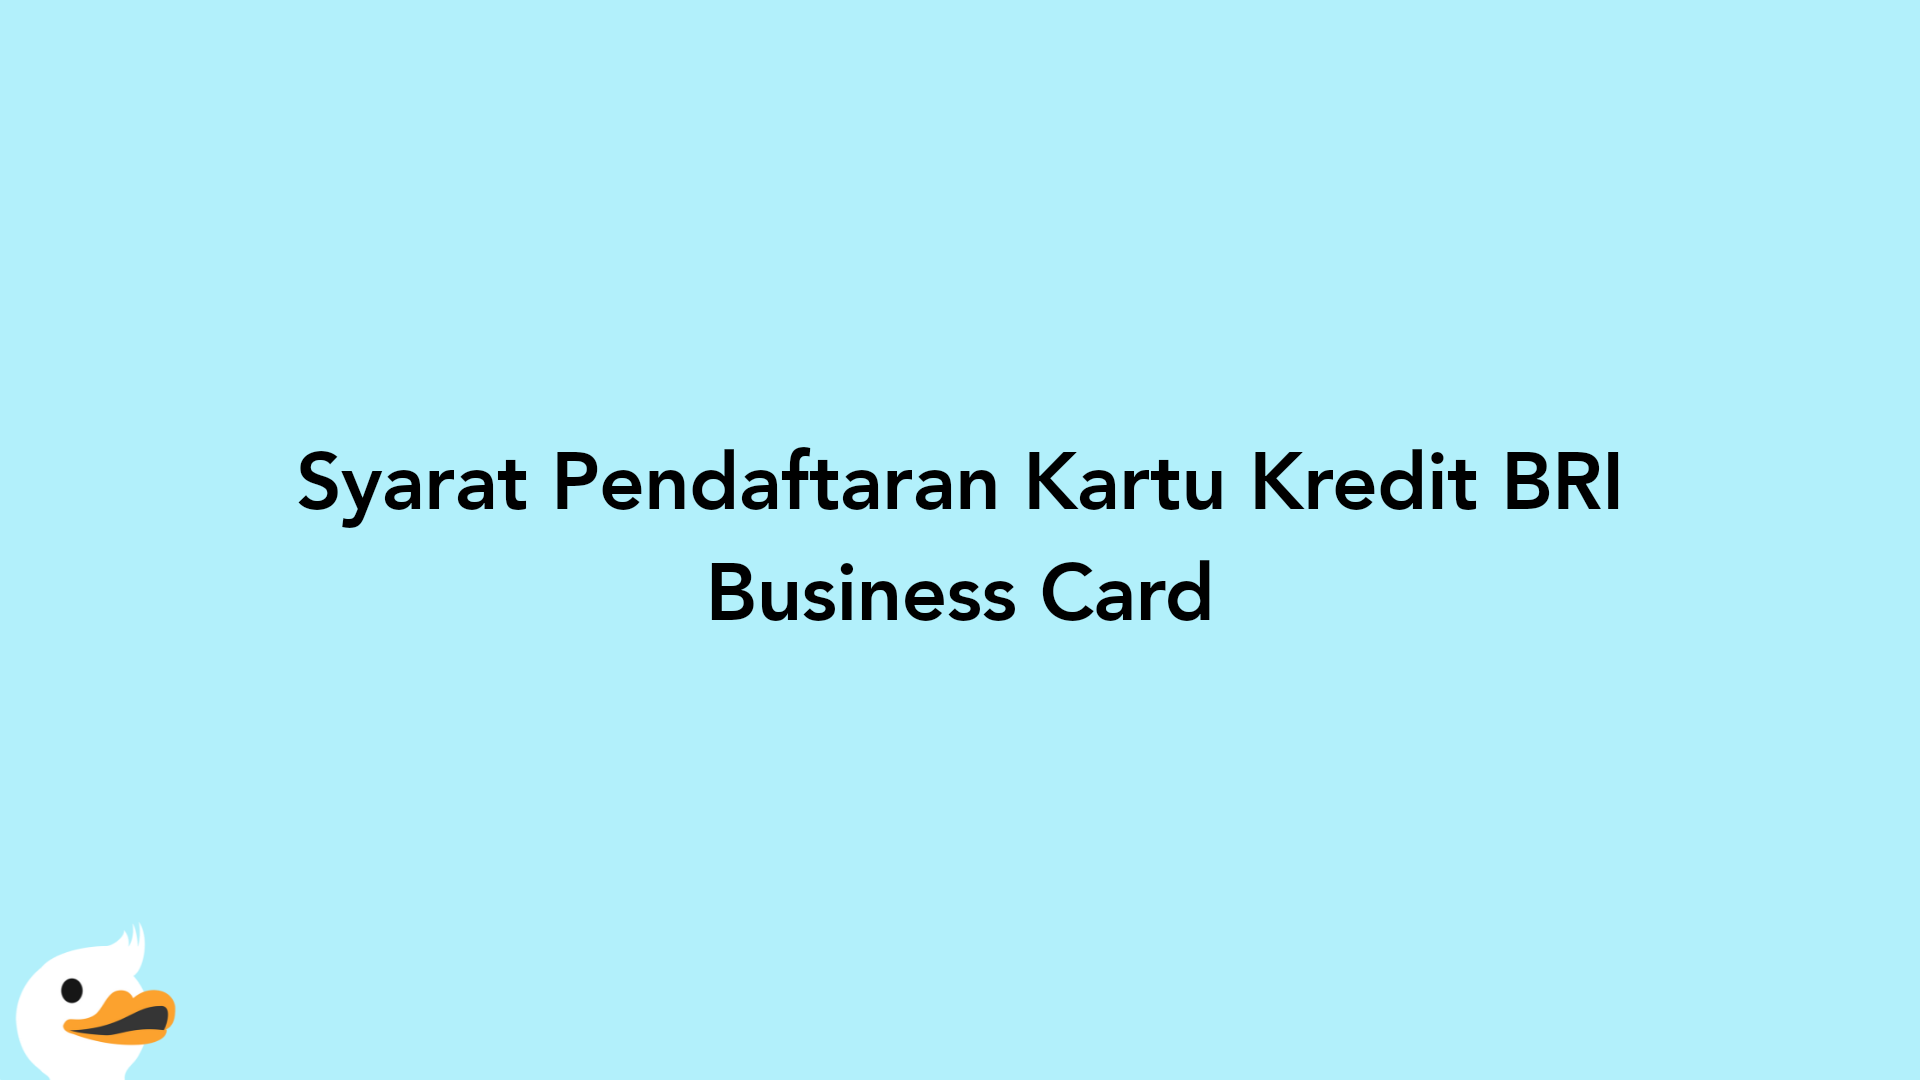 Syarat Pendaftaran Kartu Kredit BRI Business Card